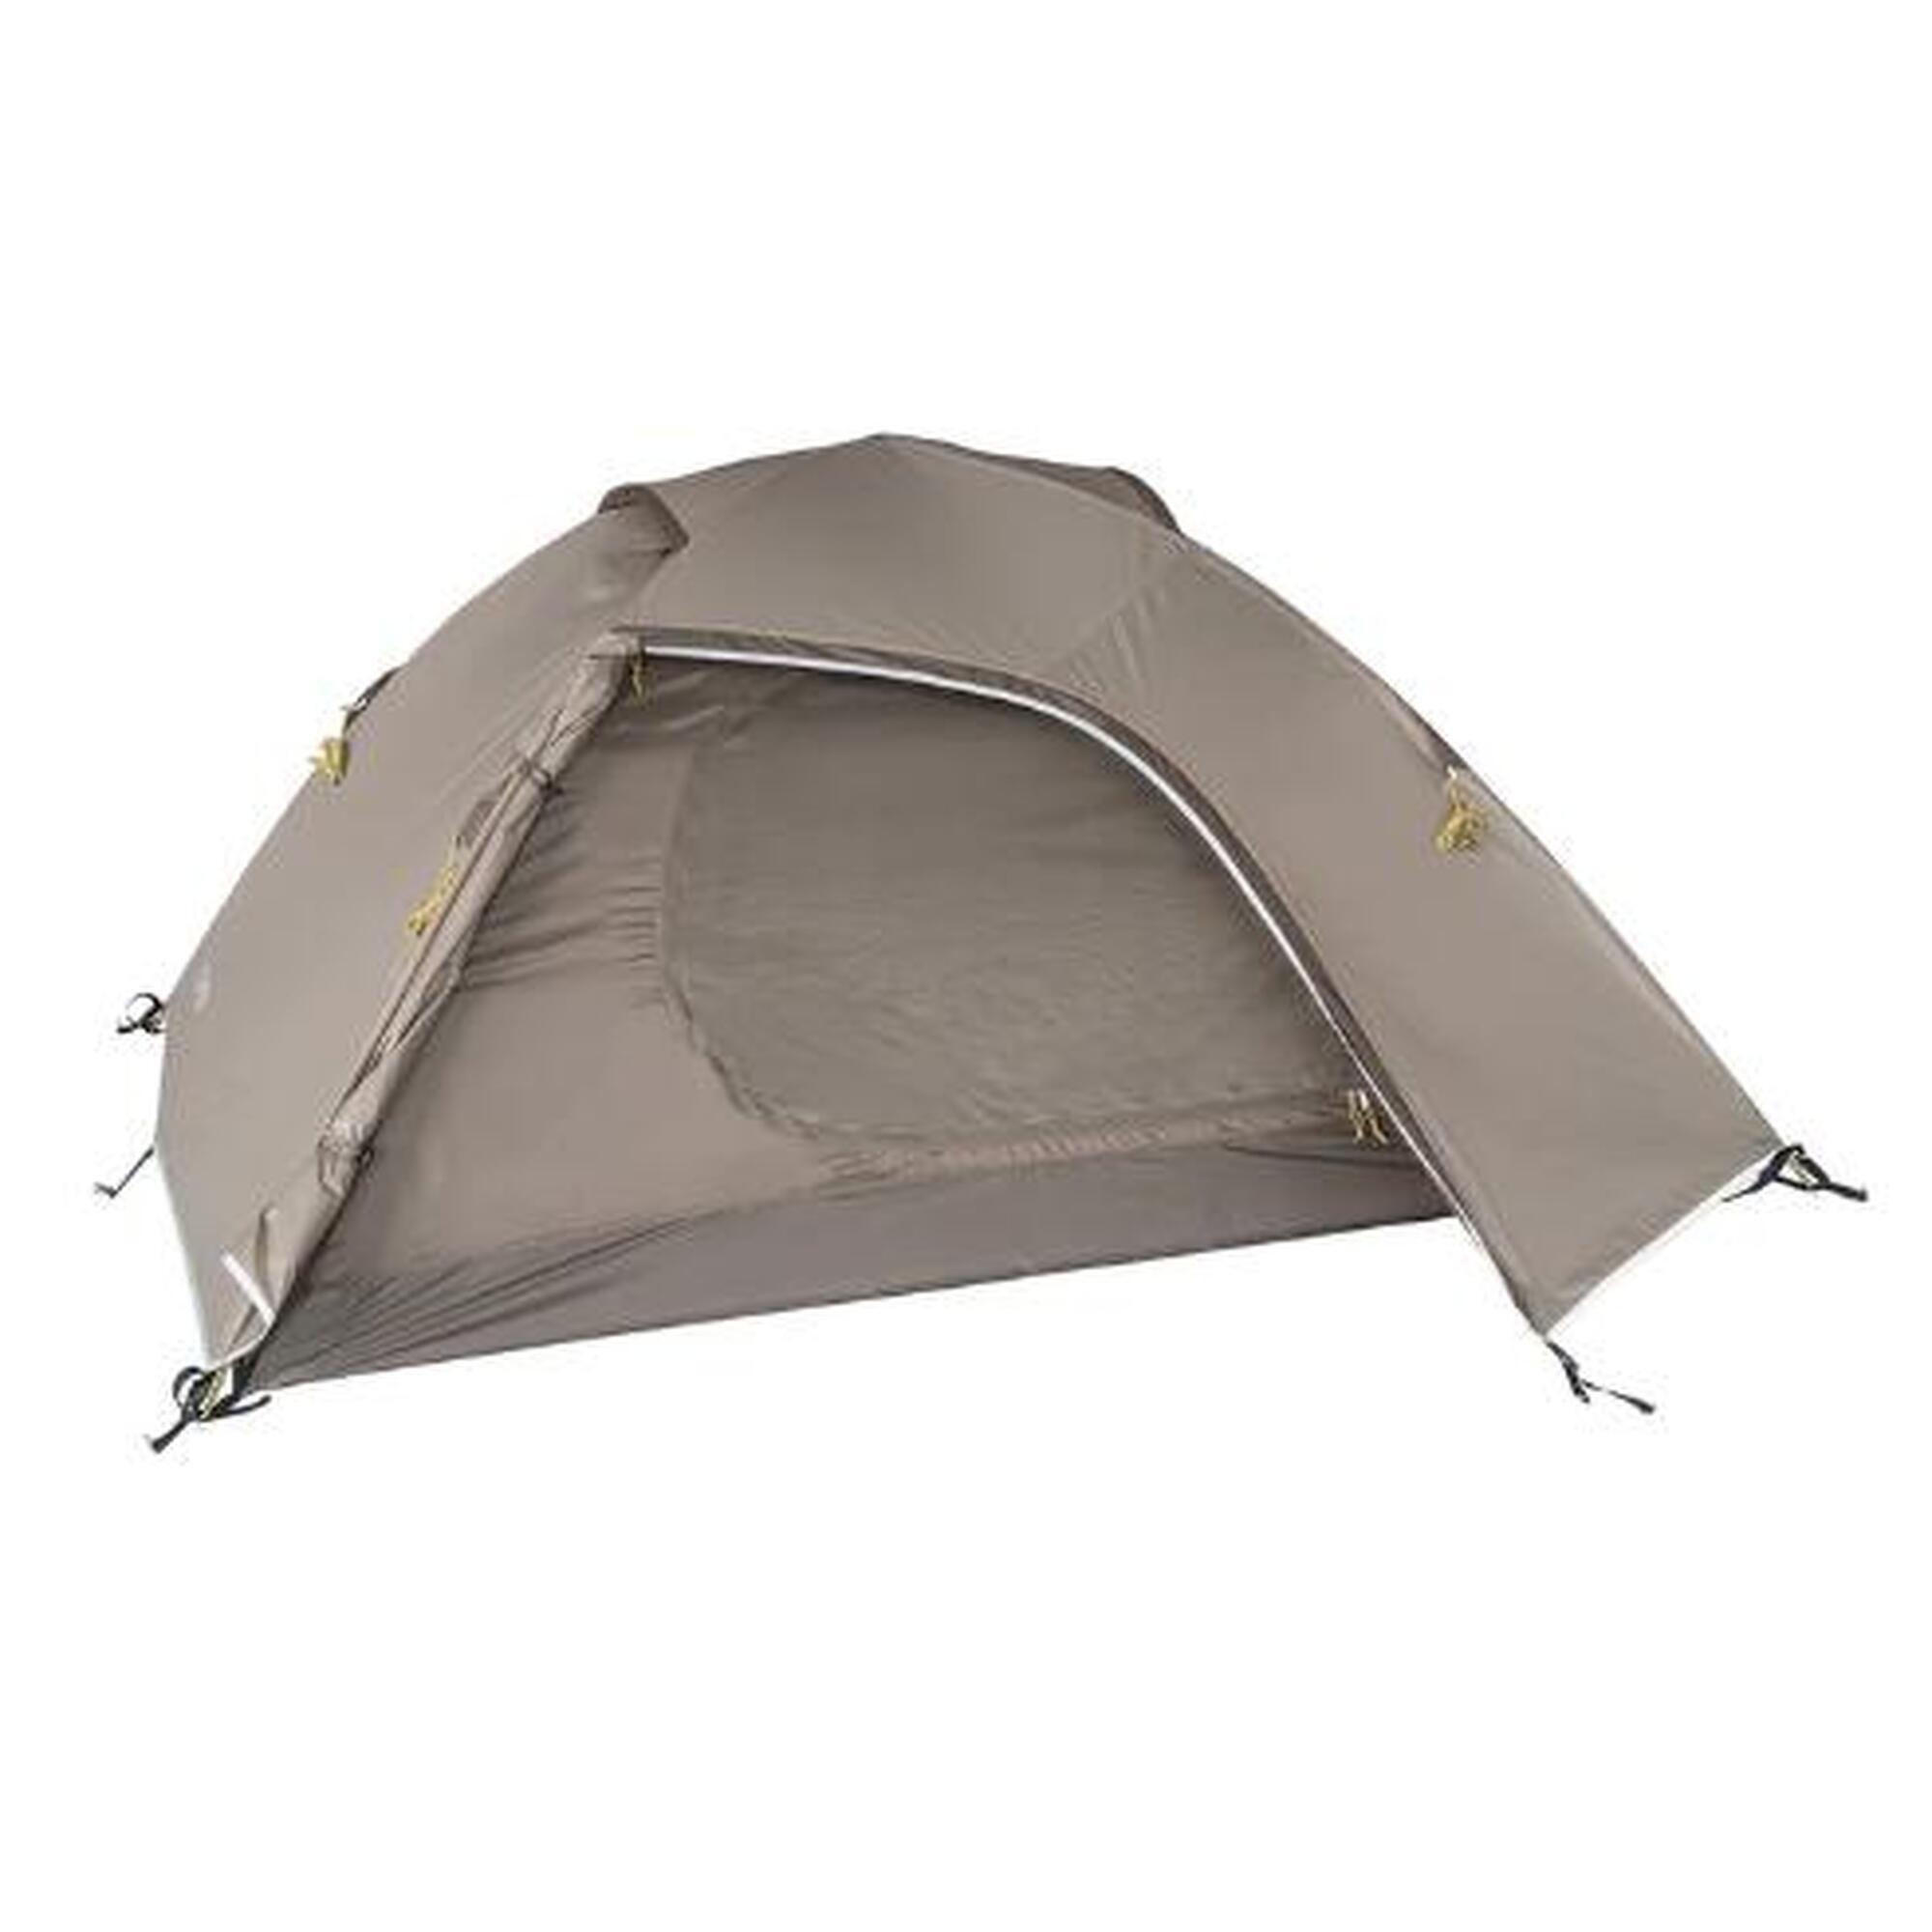 Палатка трекинговая купольная Tambu Binodana для 2 человек, коричневый / золотисто-желтый палатка higashi chum 6 человек 01399